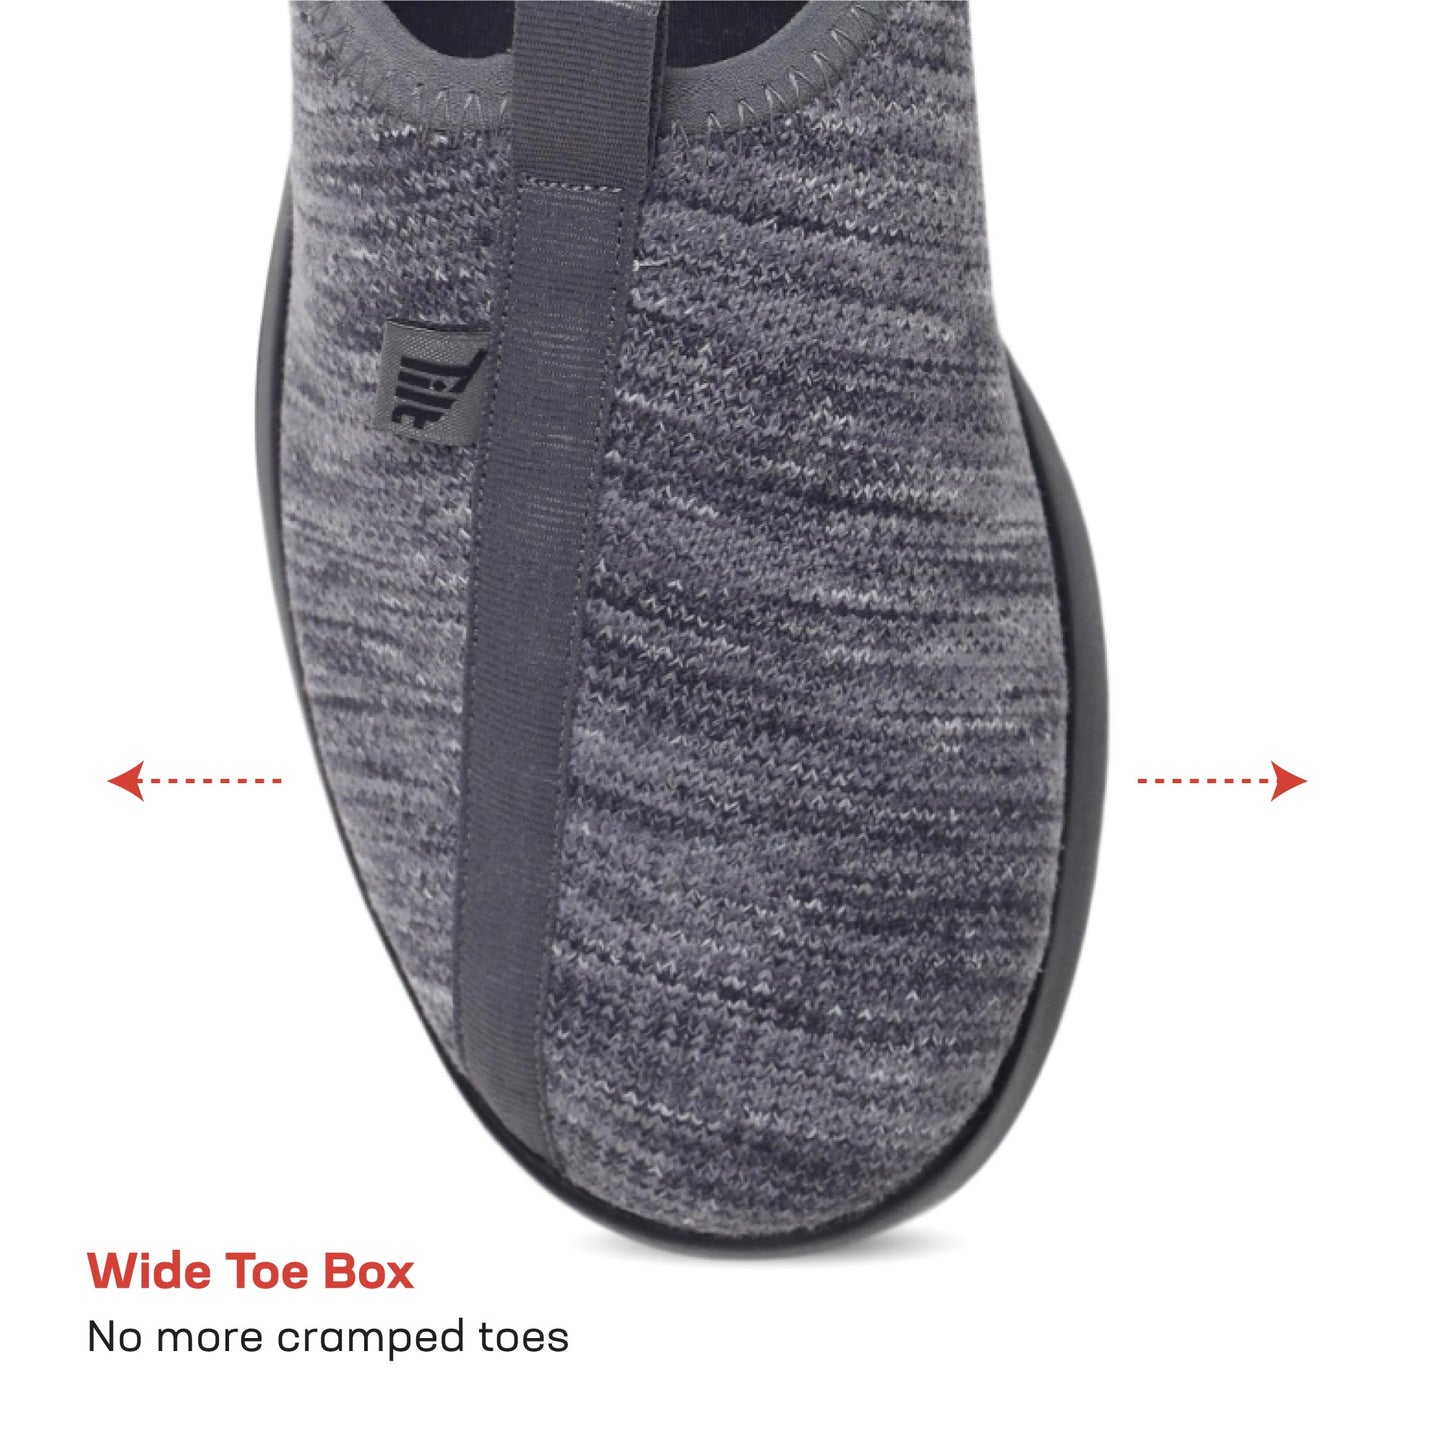 EZPlay Knit Slip Ons for Men - Black / Grey